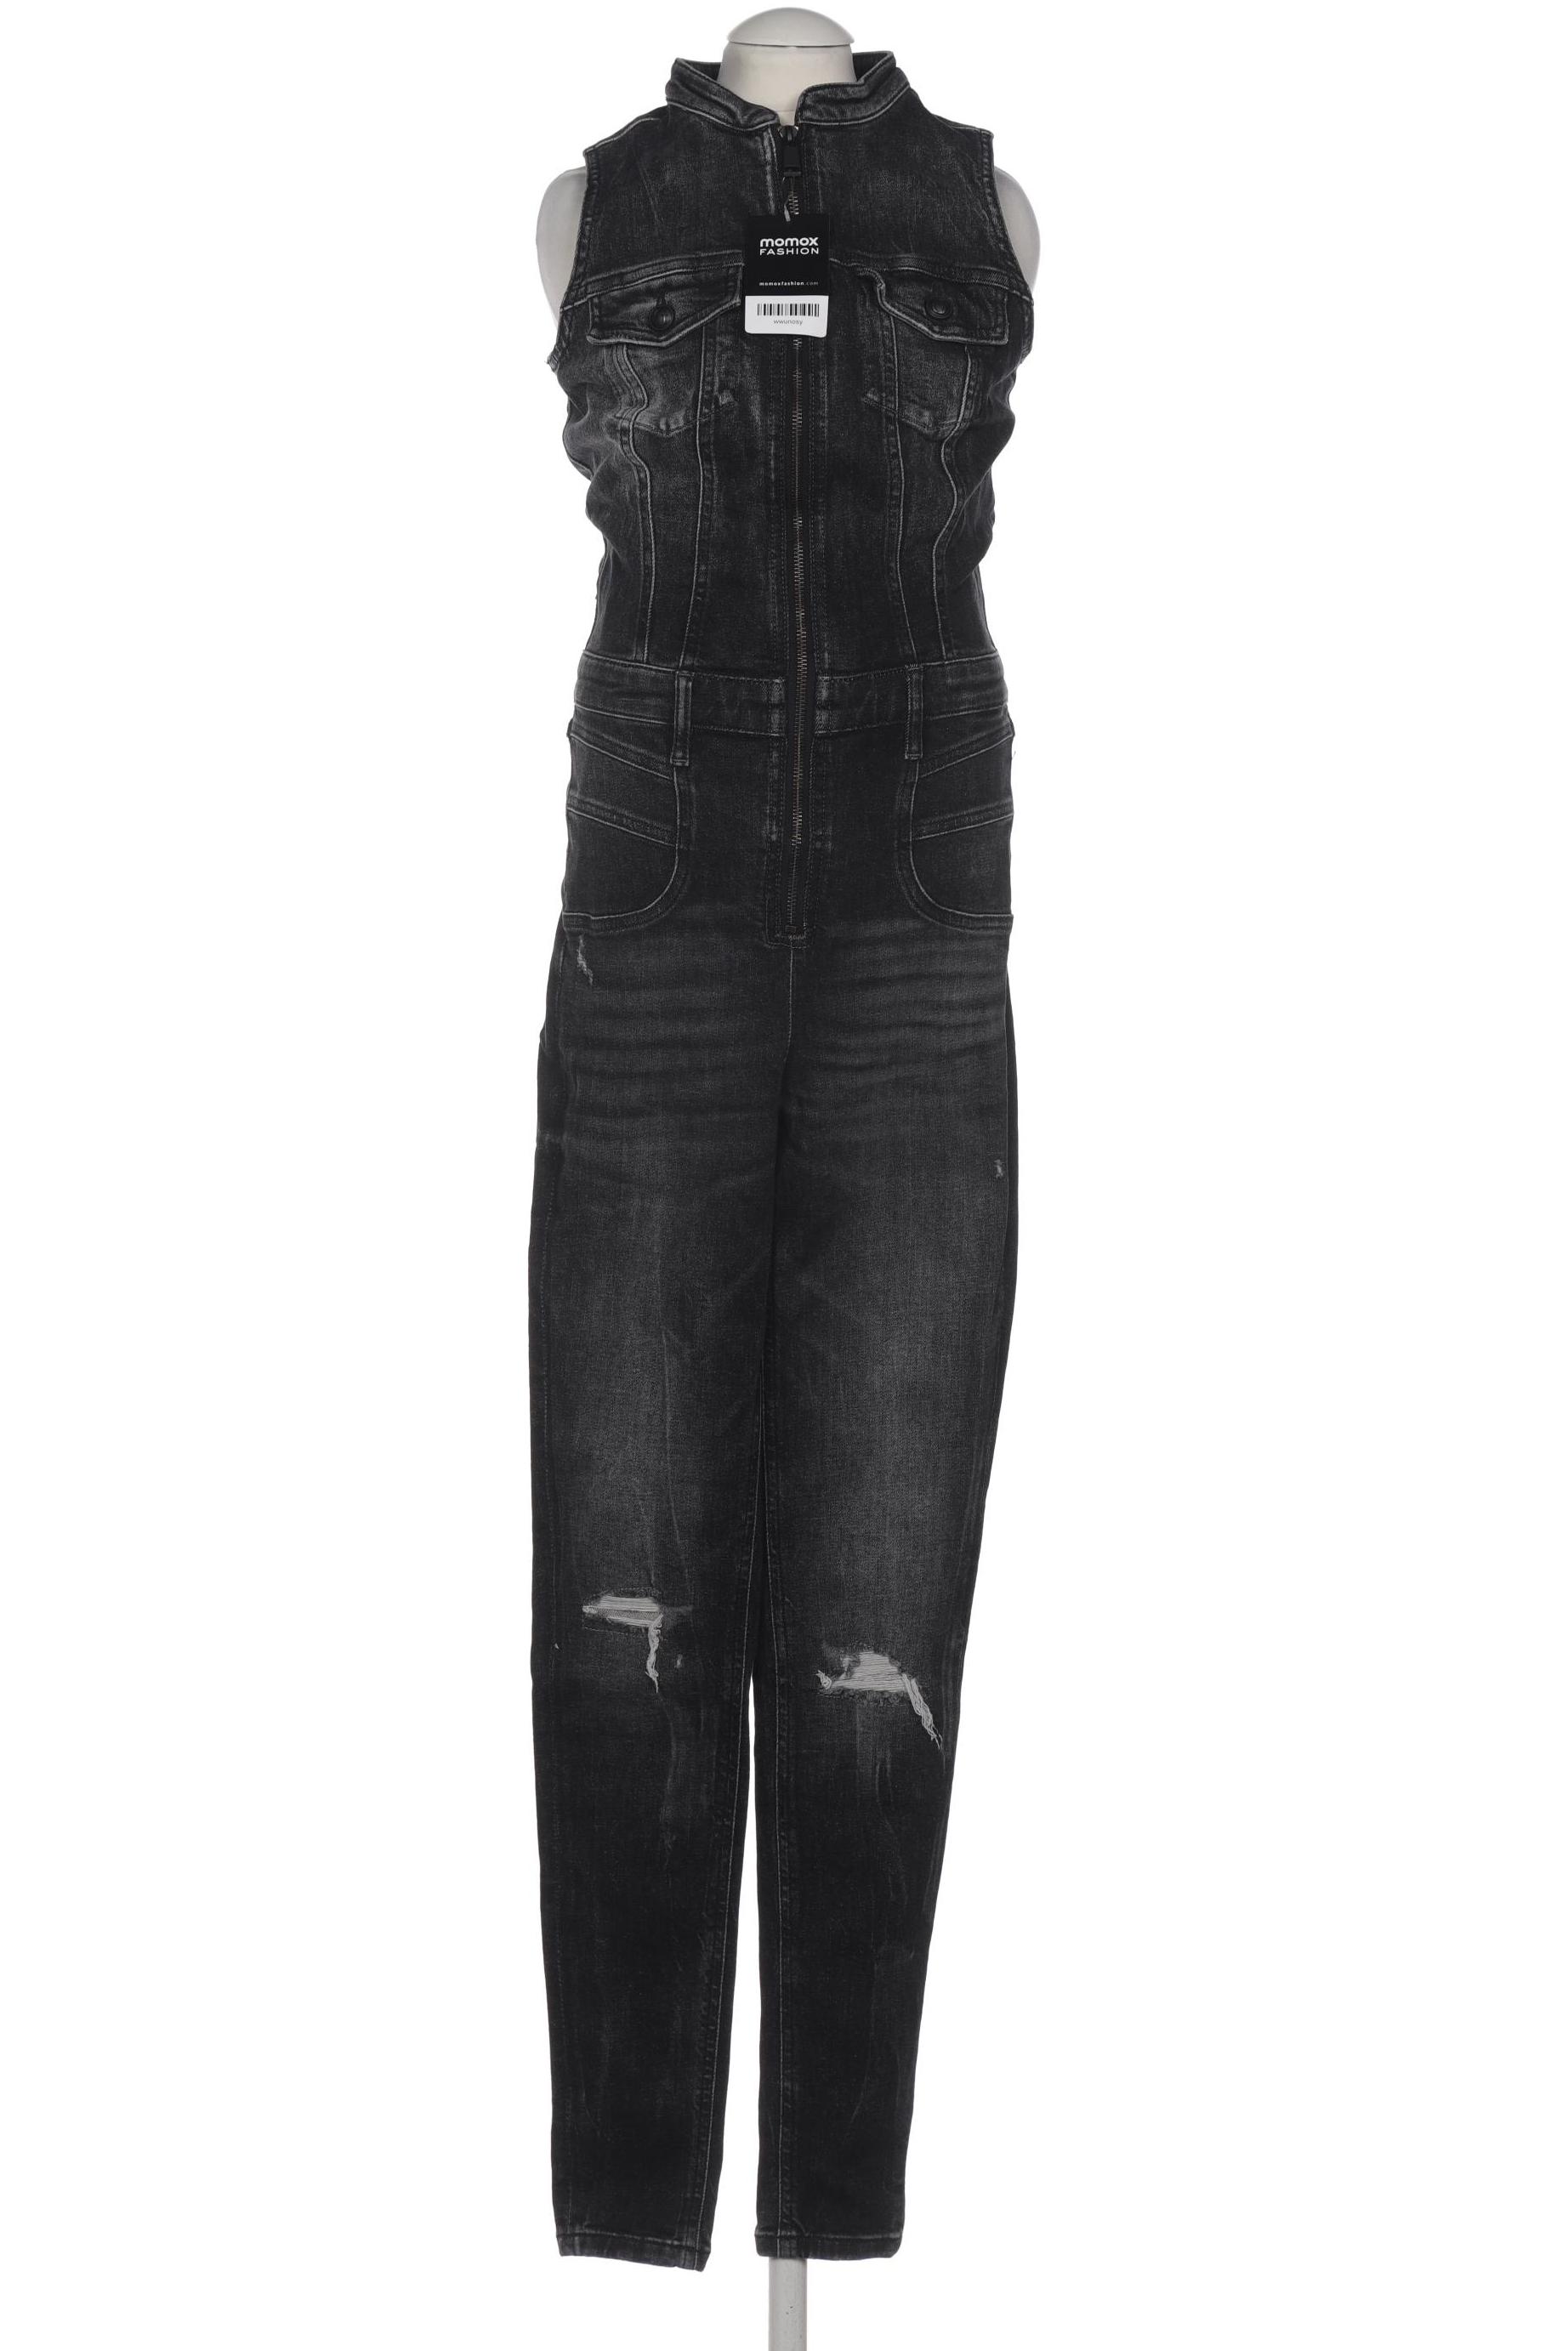 Guess Damen Jumpsuit/Overall, schwarz, Gr. 40 von Guess